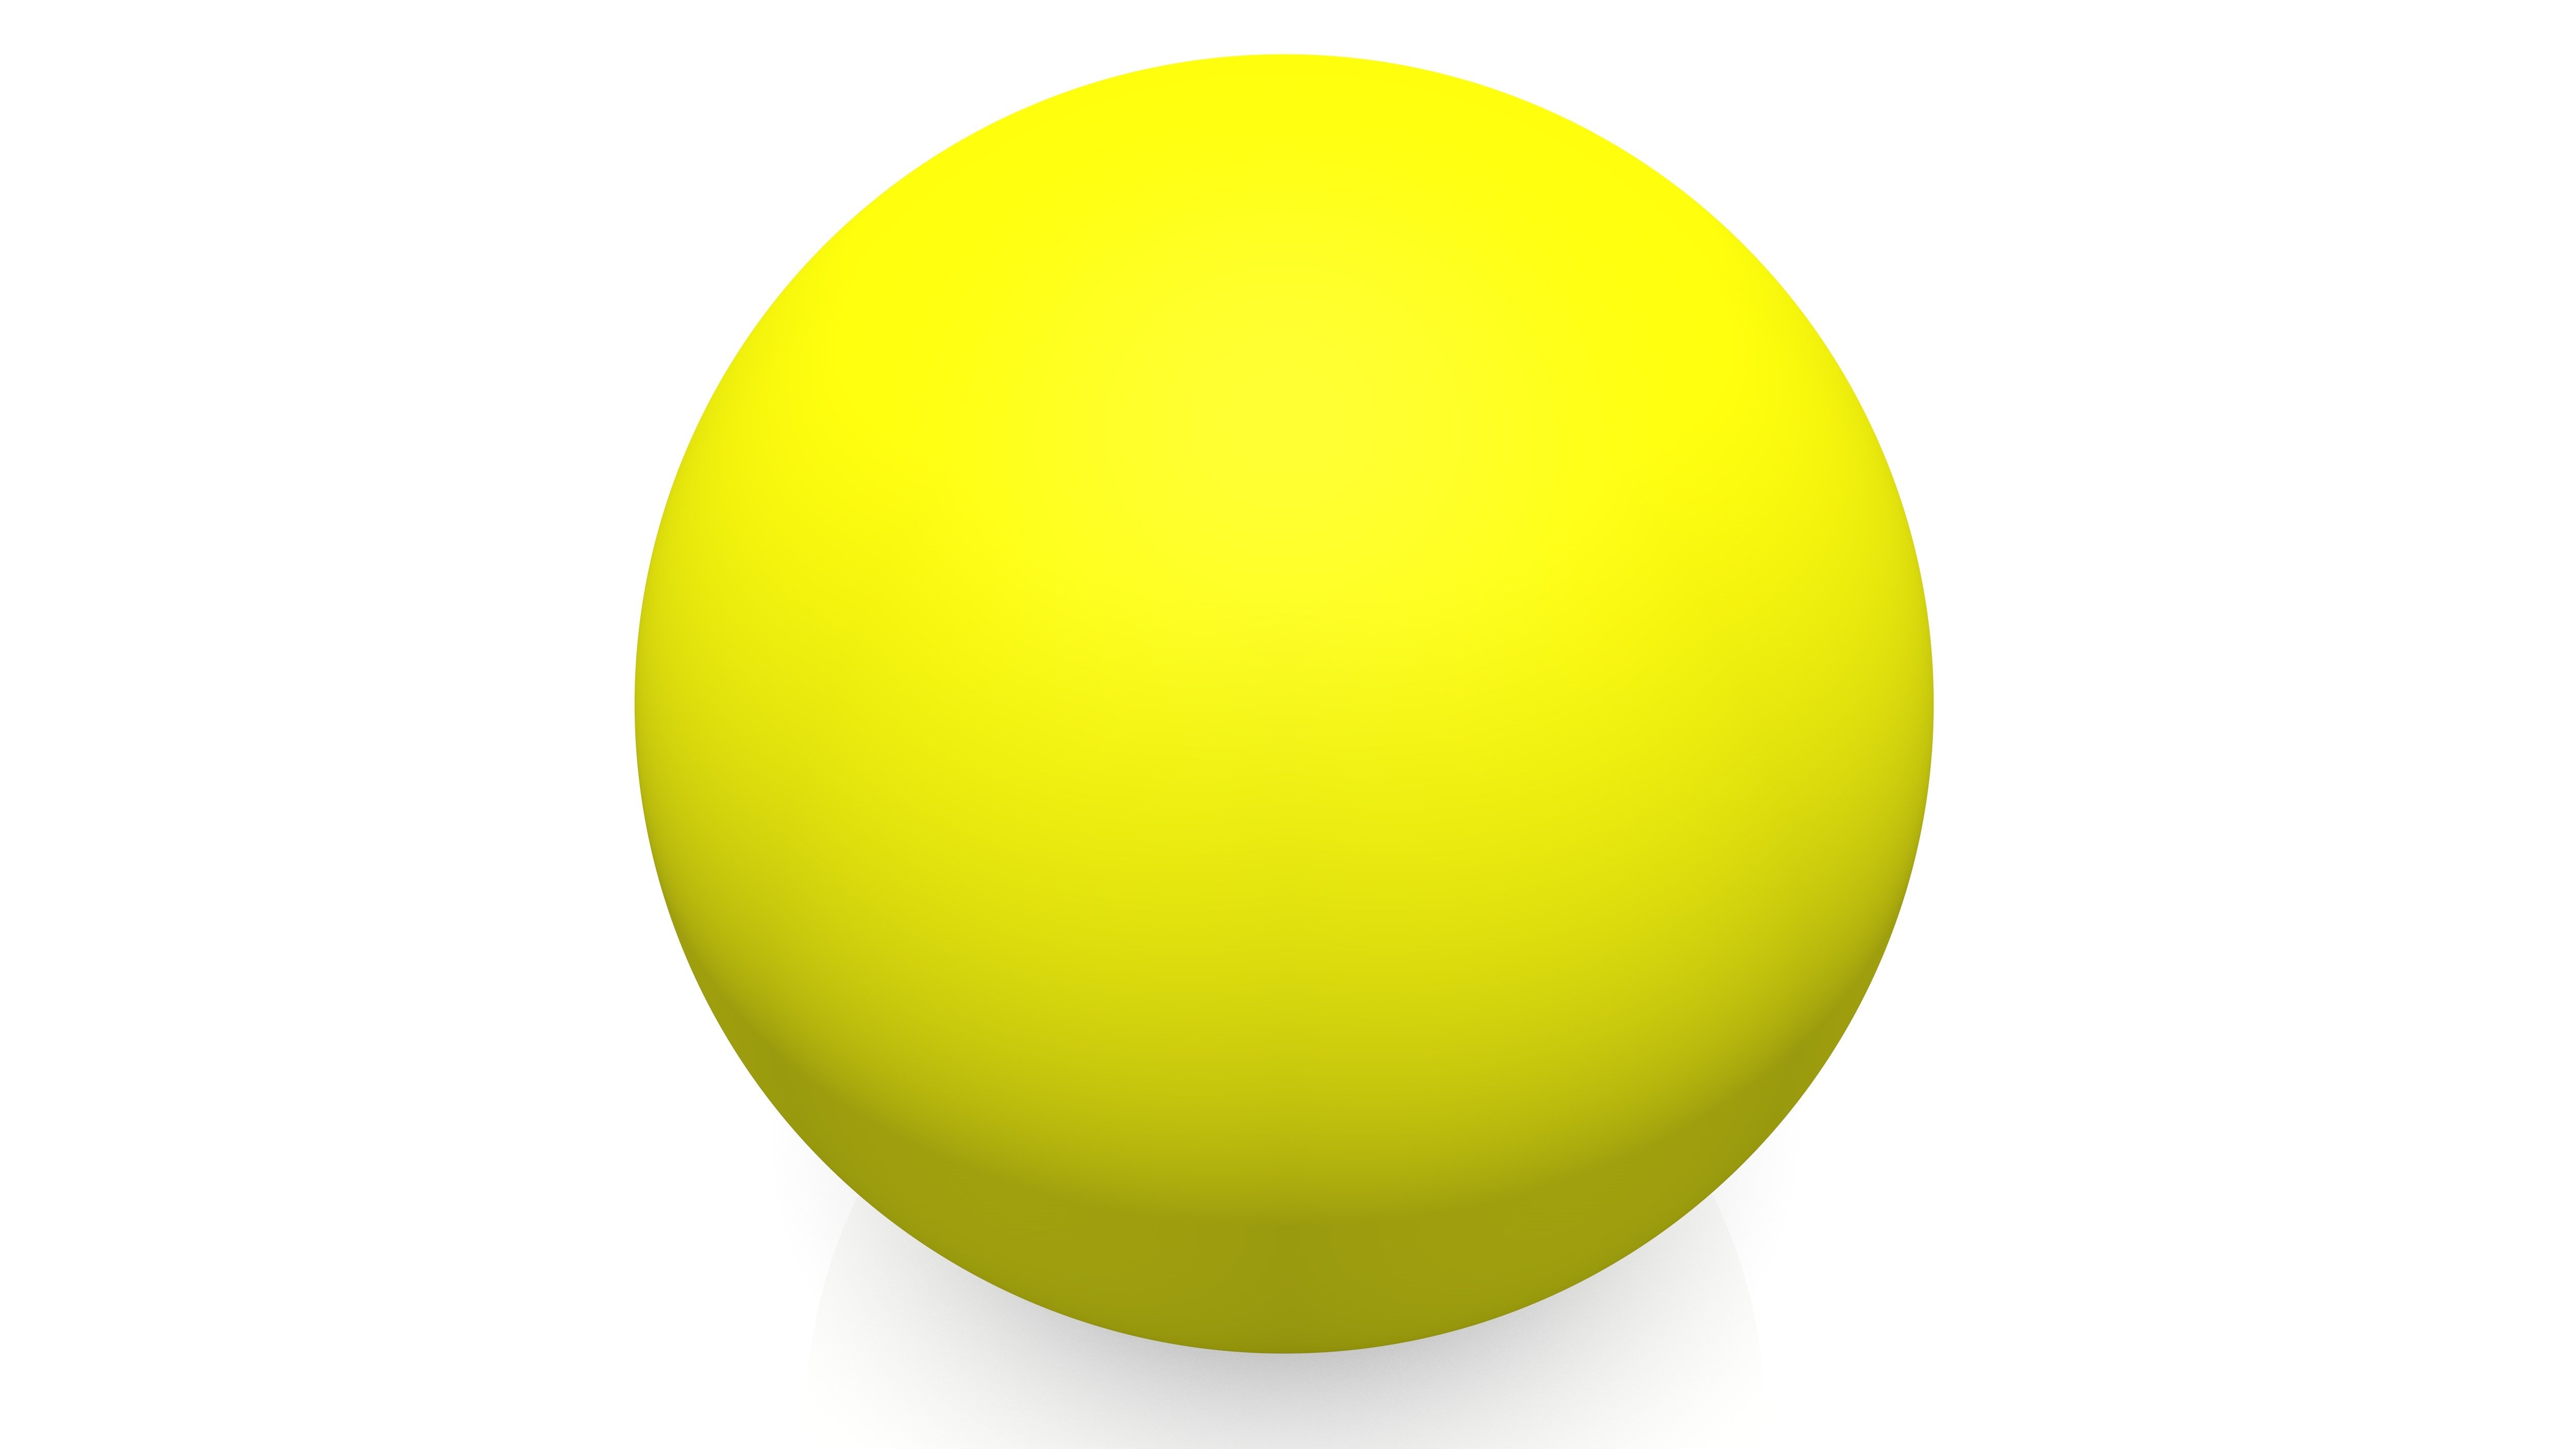 Round ball